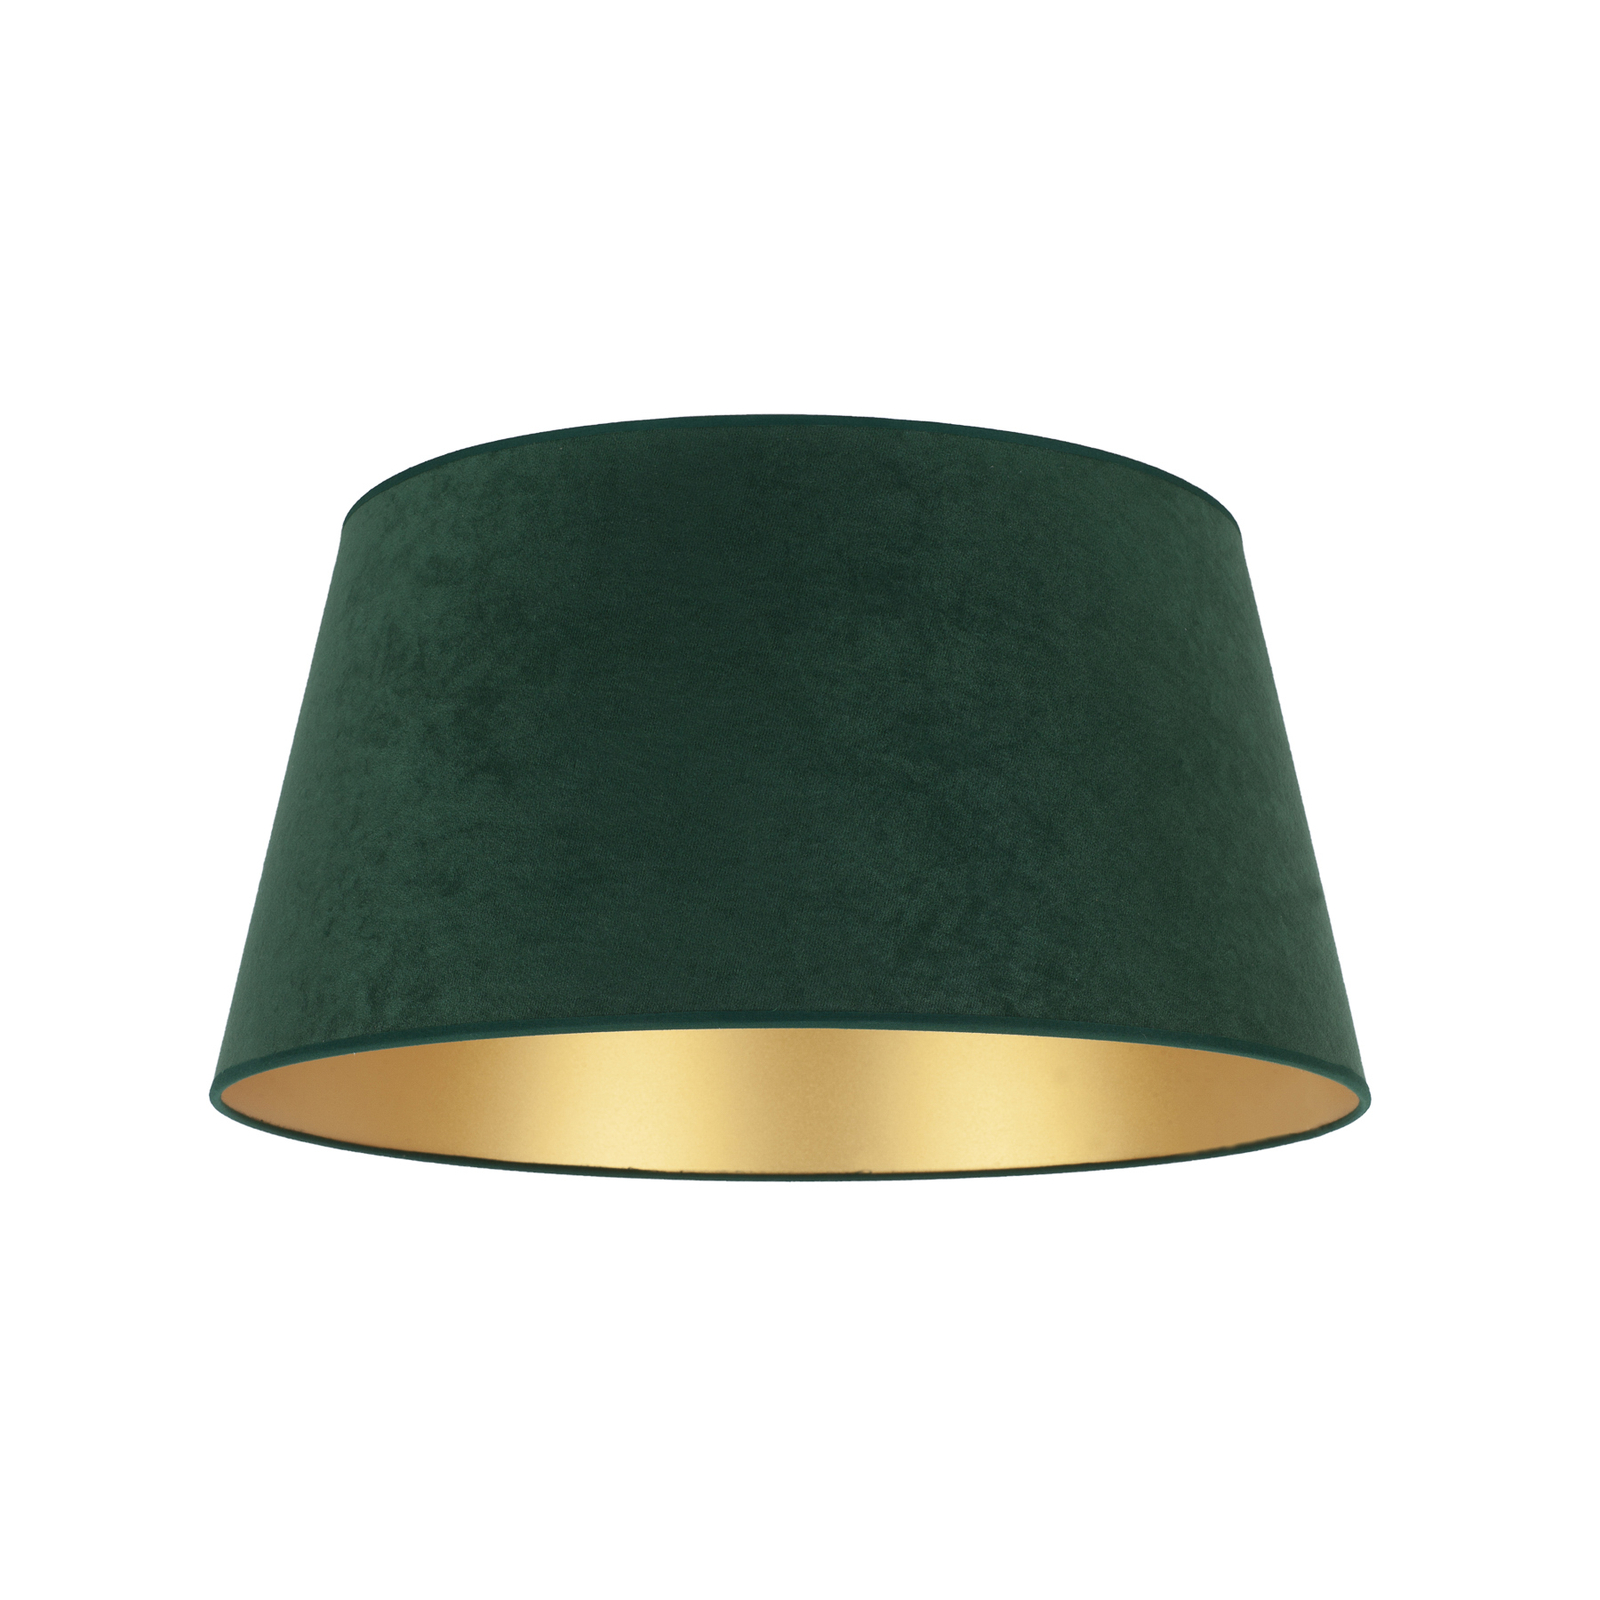 Lampeskjerm Cone høyde 25,5 cm, mørkegrønn/gull